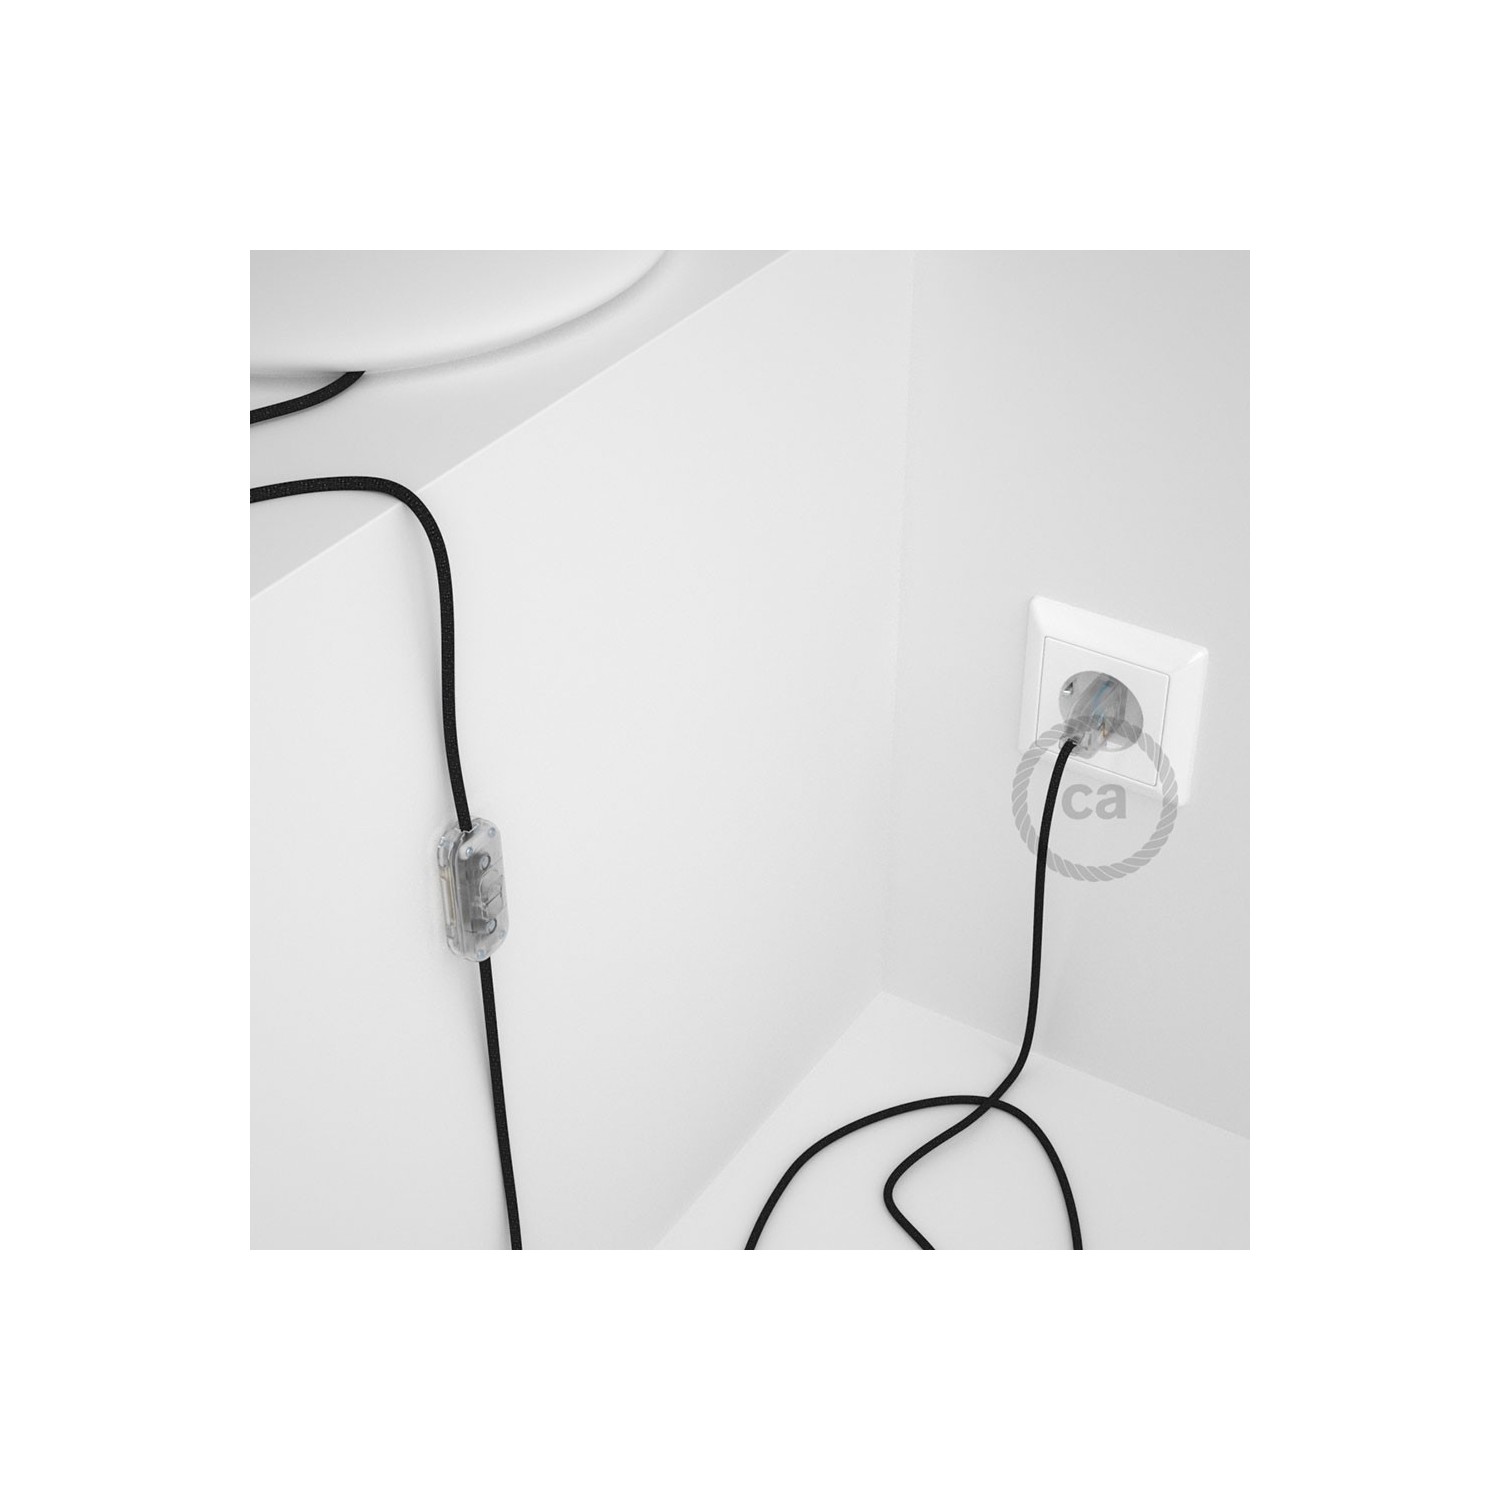 Napájecí kabel pro stolní lampu, RL04 Černý třpytivý hedvábní hedvábní 1,80 m. Vyberte si barvu zástrčky a vypínače.